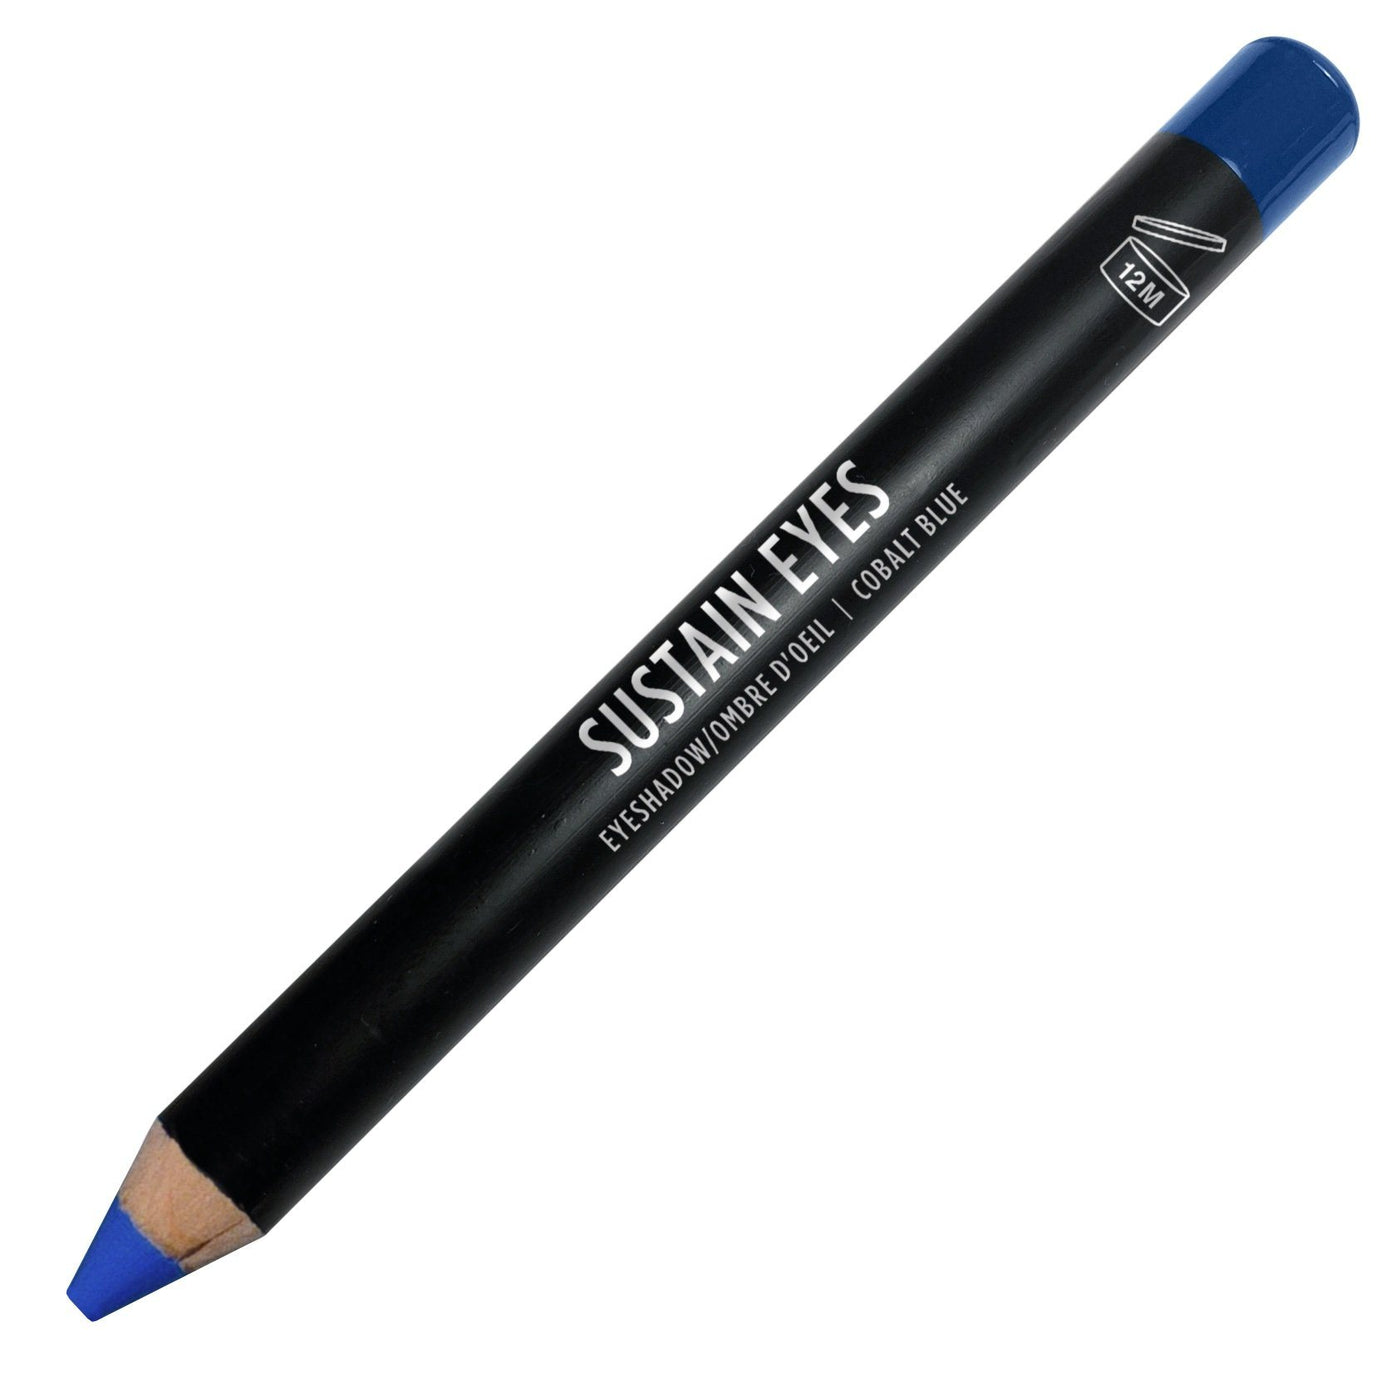 Eyeshadow Pencils